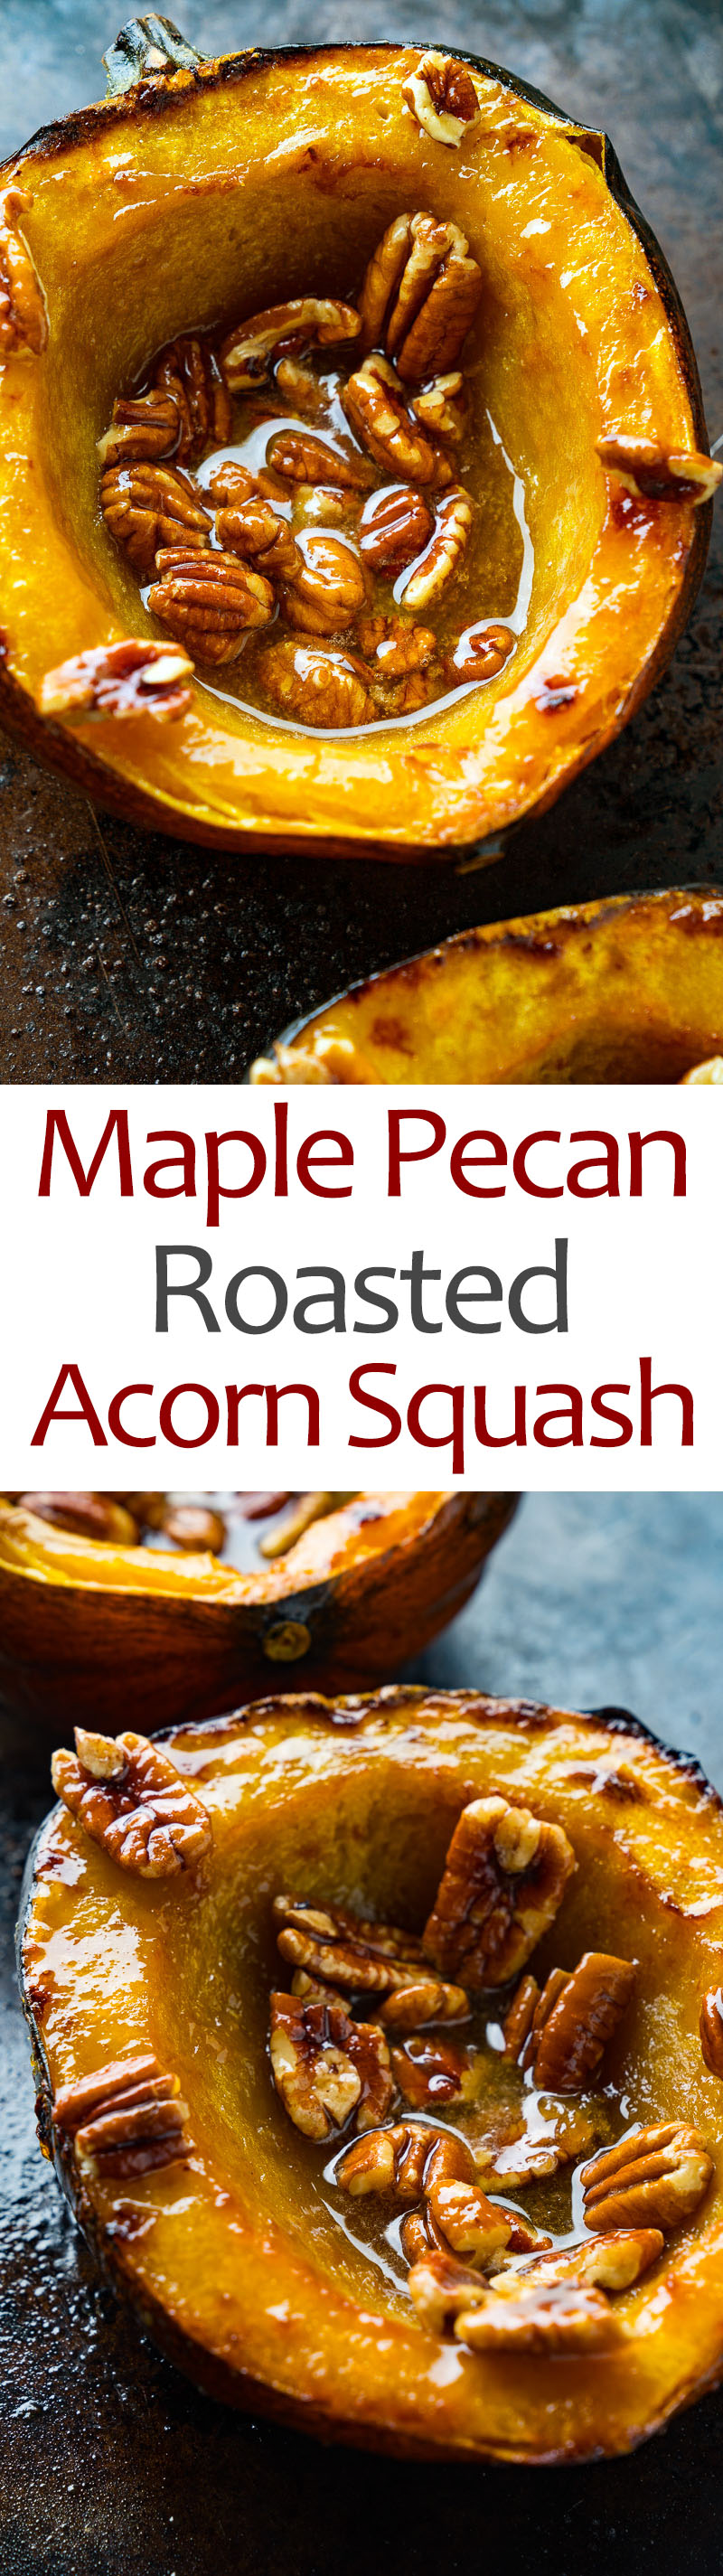 Maple Pecan Roasted Acorn Squash